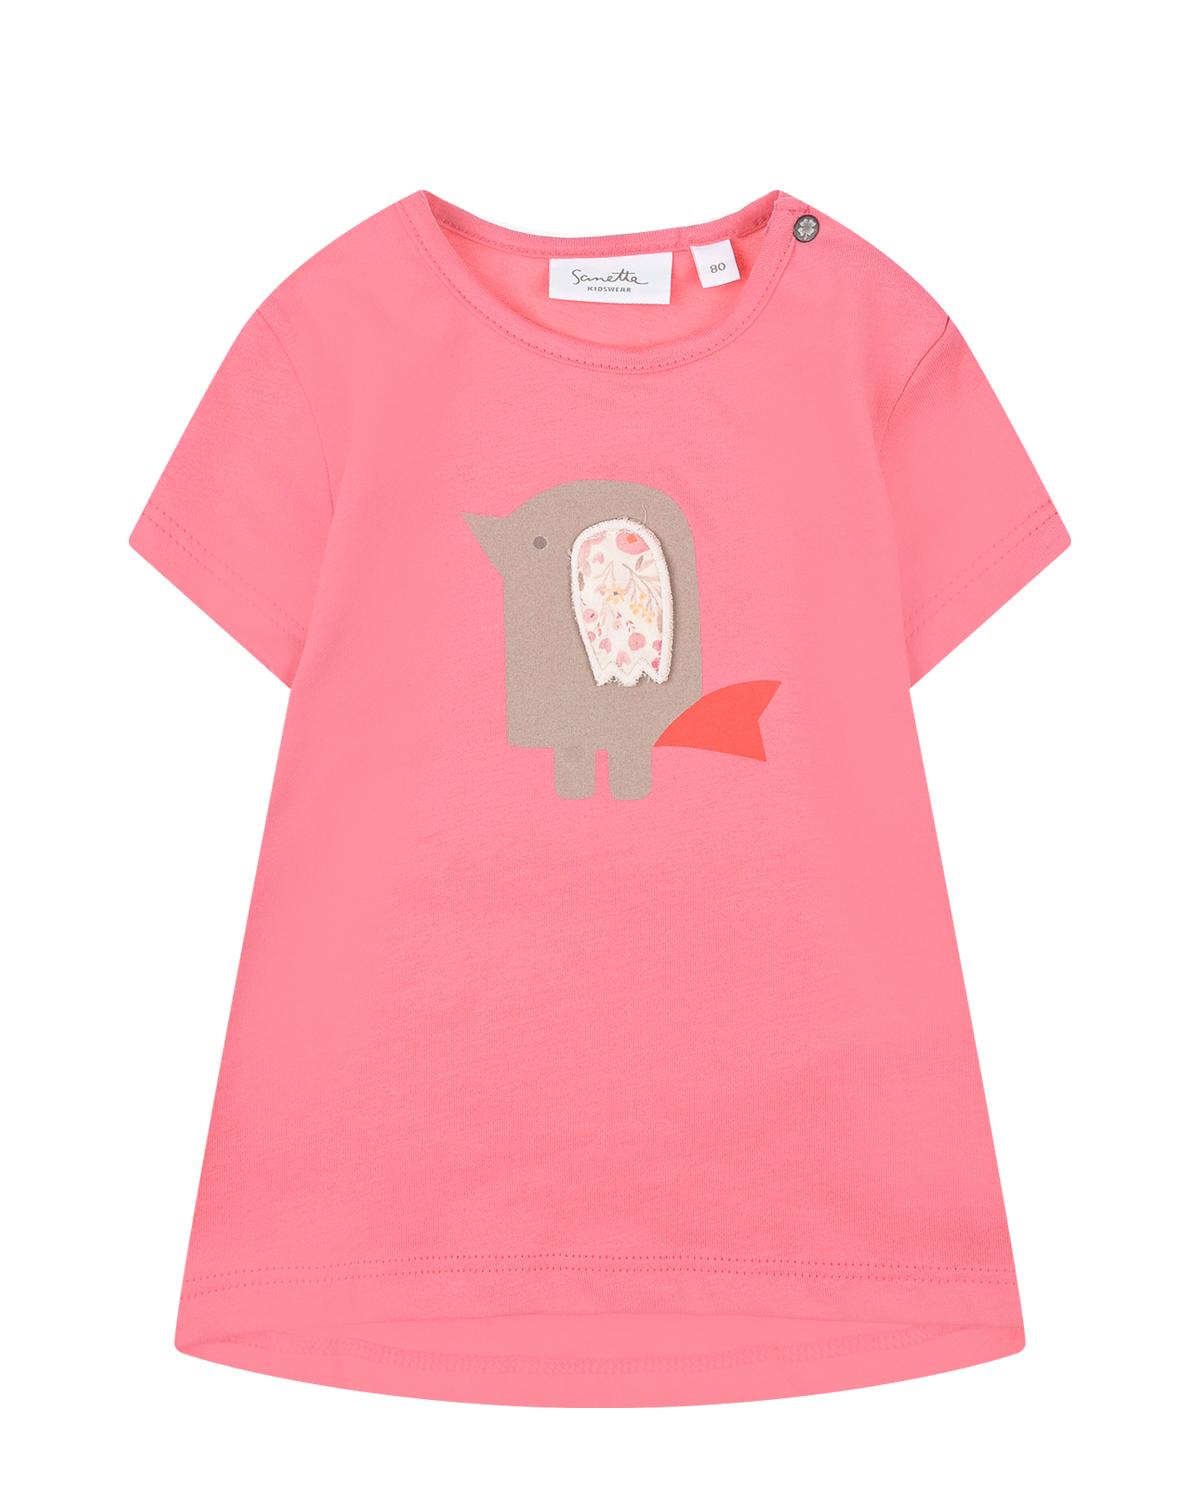 Розовая футболка с принтом "птица" Sanetta Kidswear